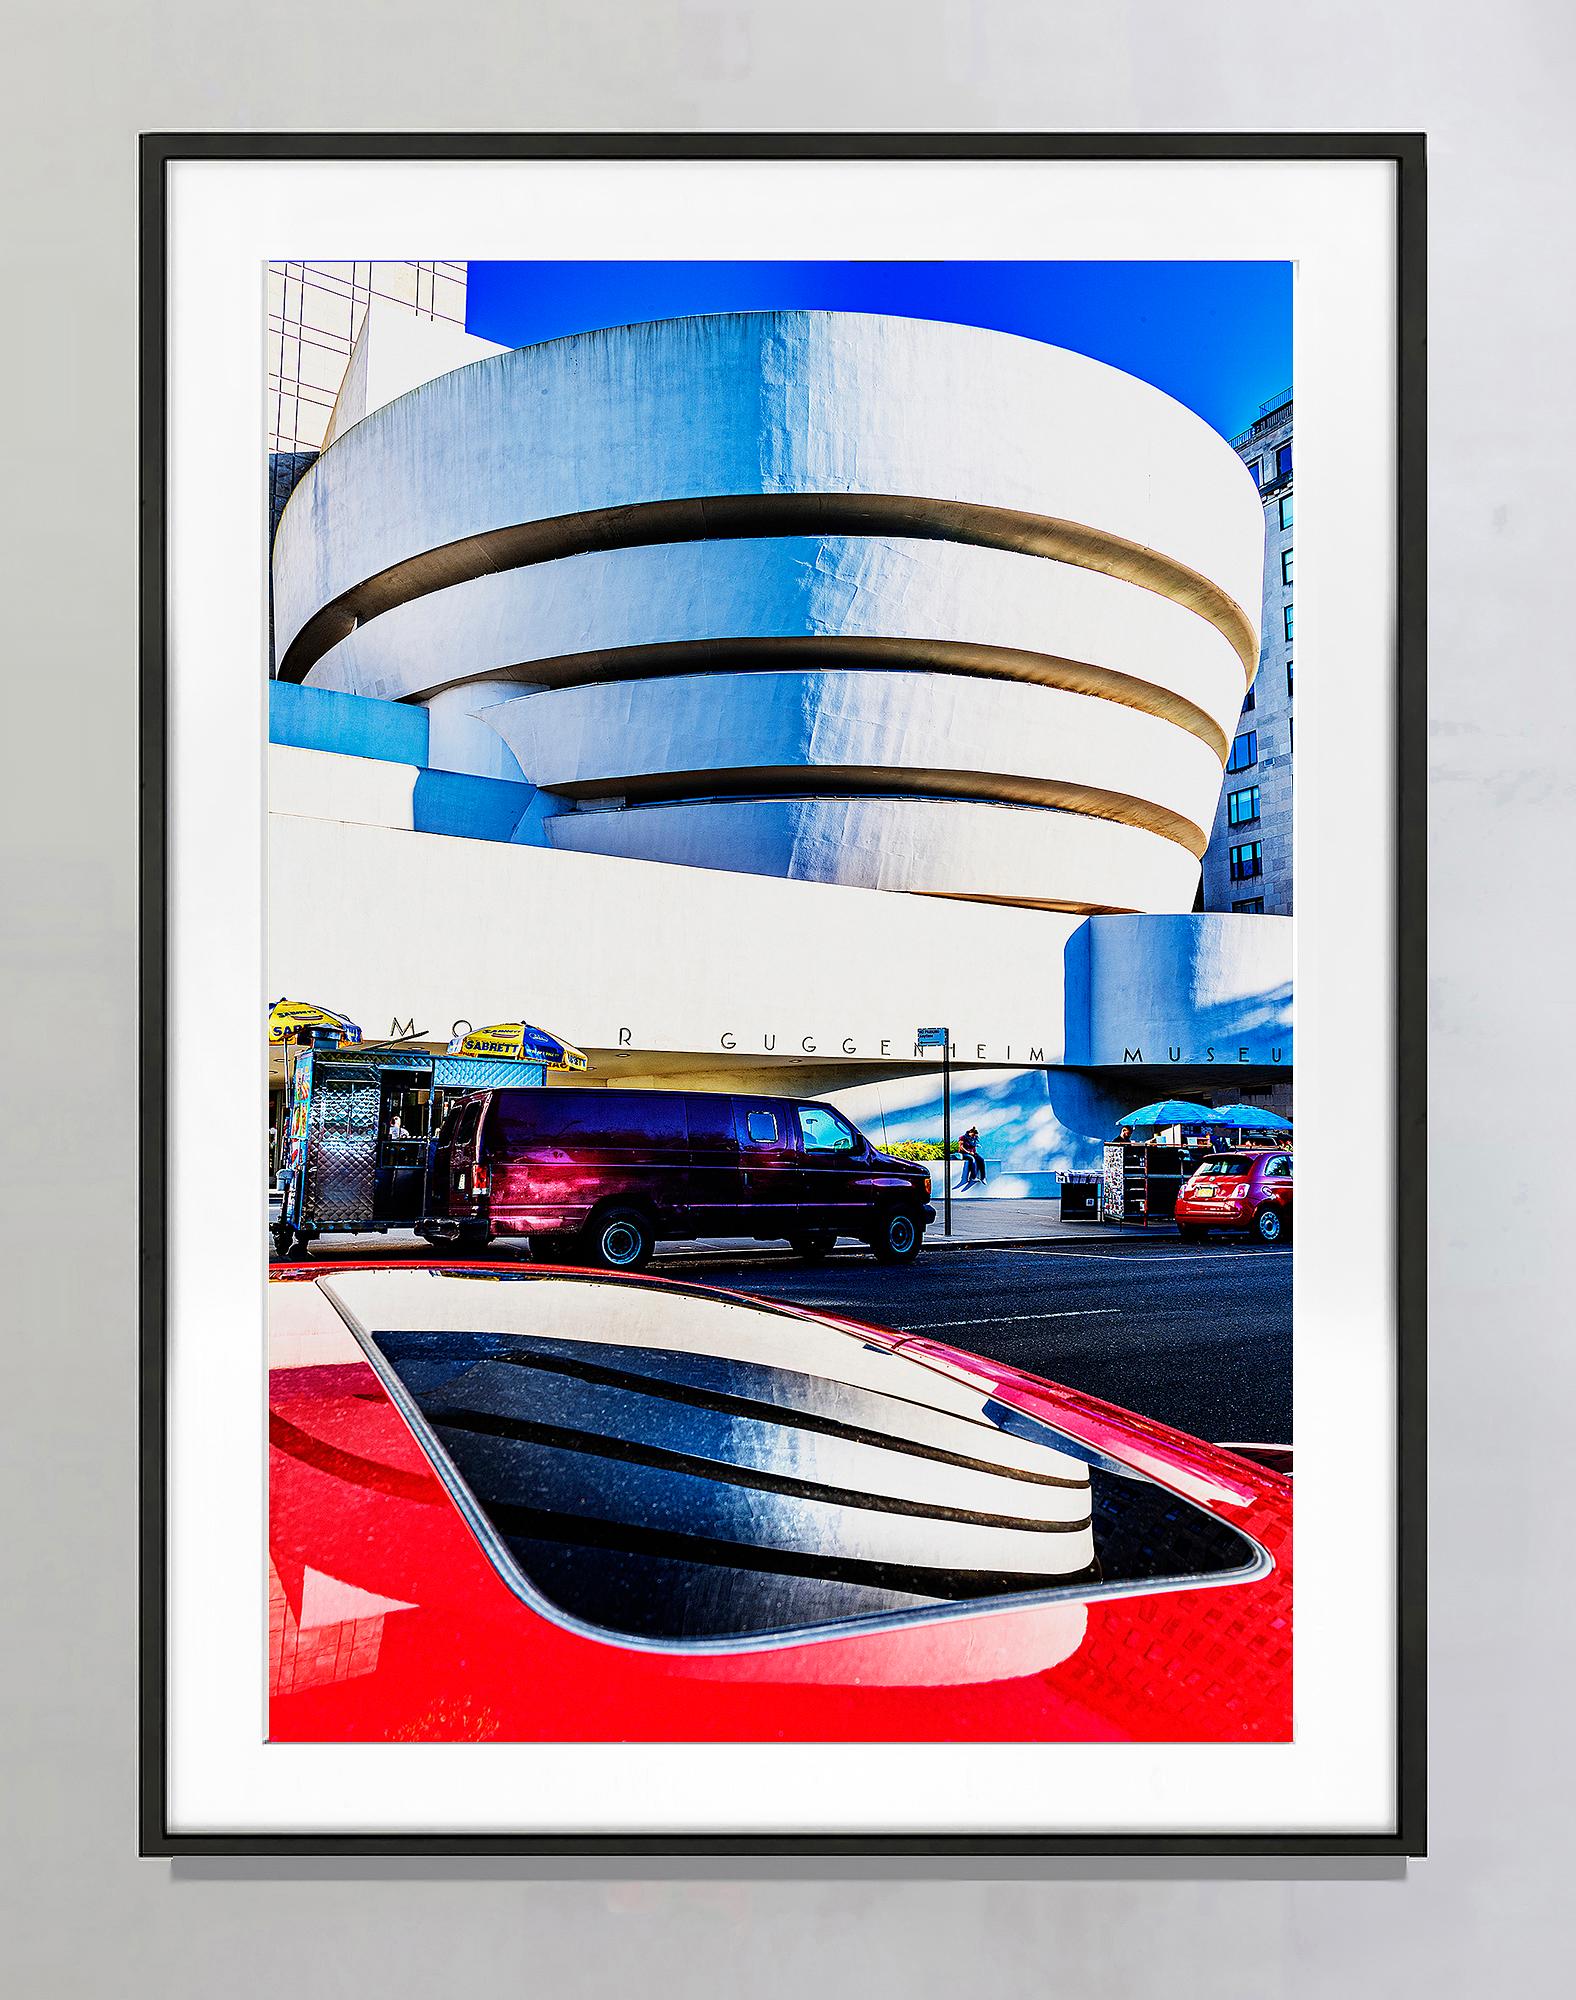 Le musée Guggenheim met sa brillance sur une voiture rouge - Photograph de Mitchell Funk